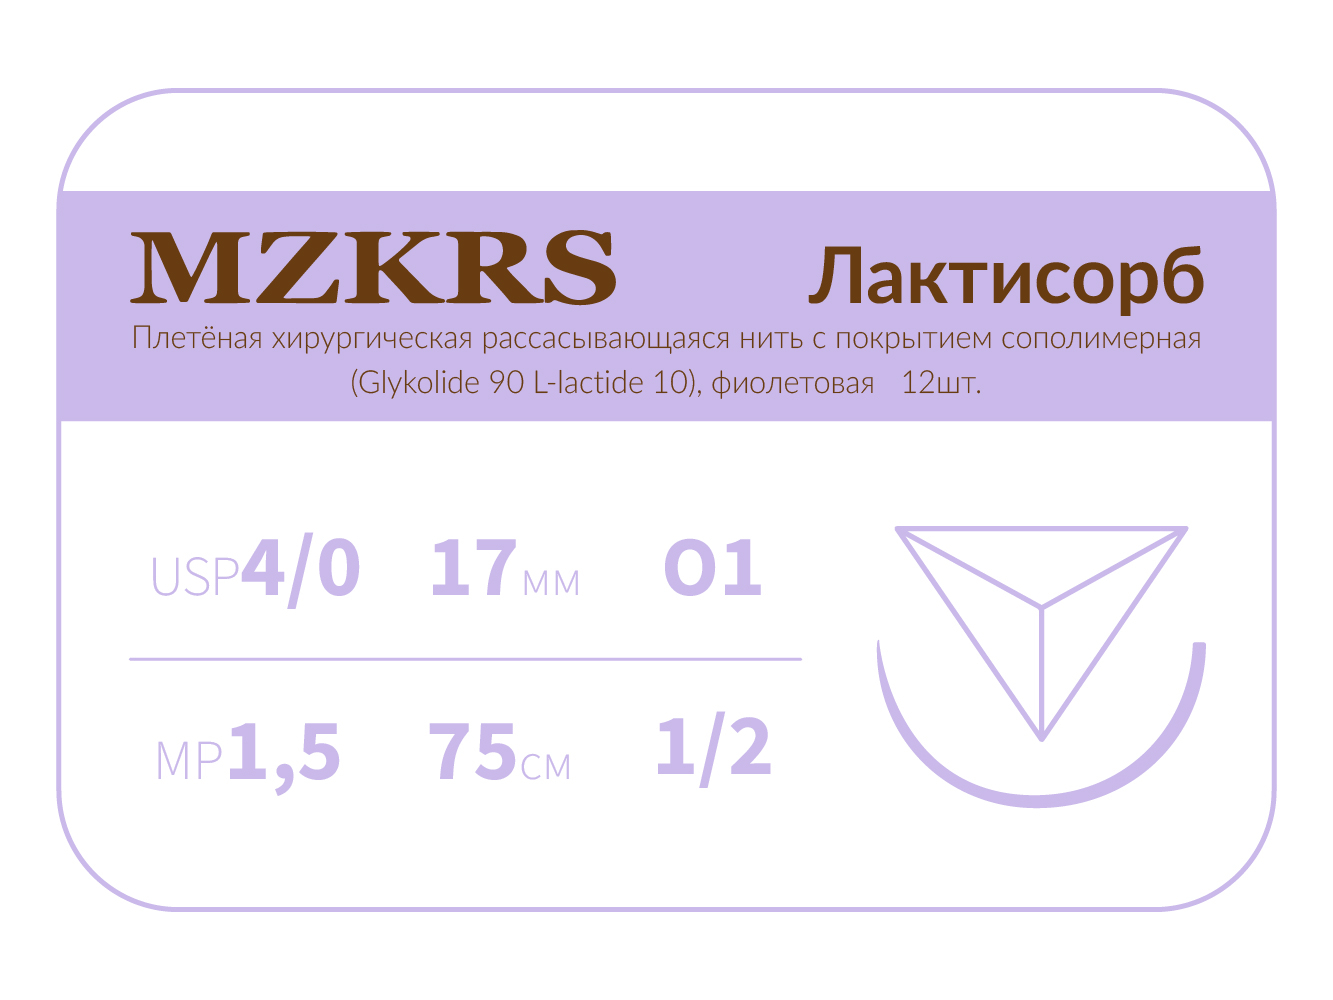 1712О1 Premium -4/0 (1.5)75 ПГЛ ЛАКТИСОРБ хирургическая нить сополимерная, обратно-режущая игла, MZKRS (Россия)